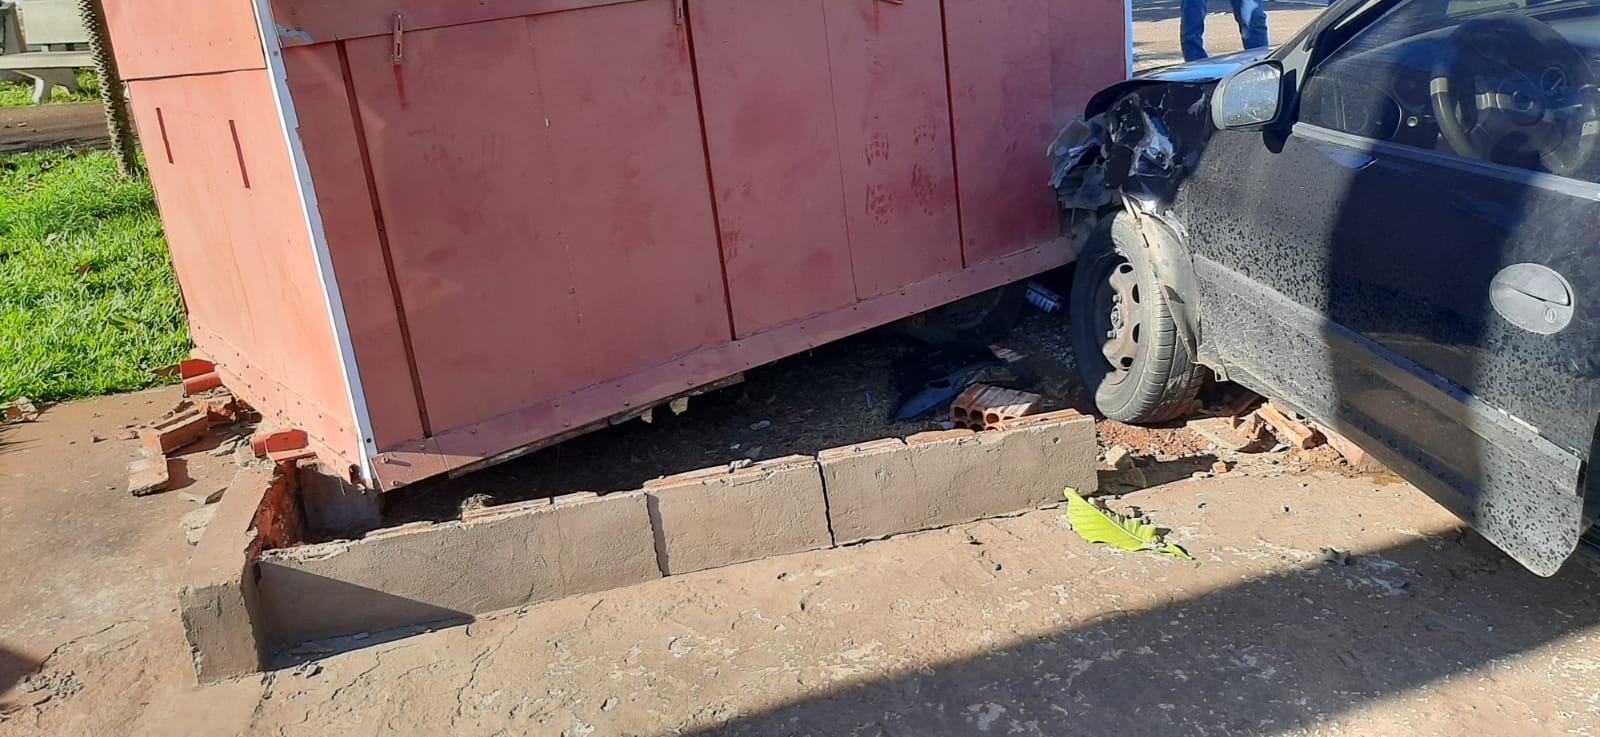 Cordeirópolis registra 2 acidentes de trânsito